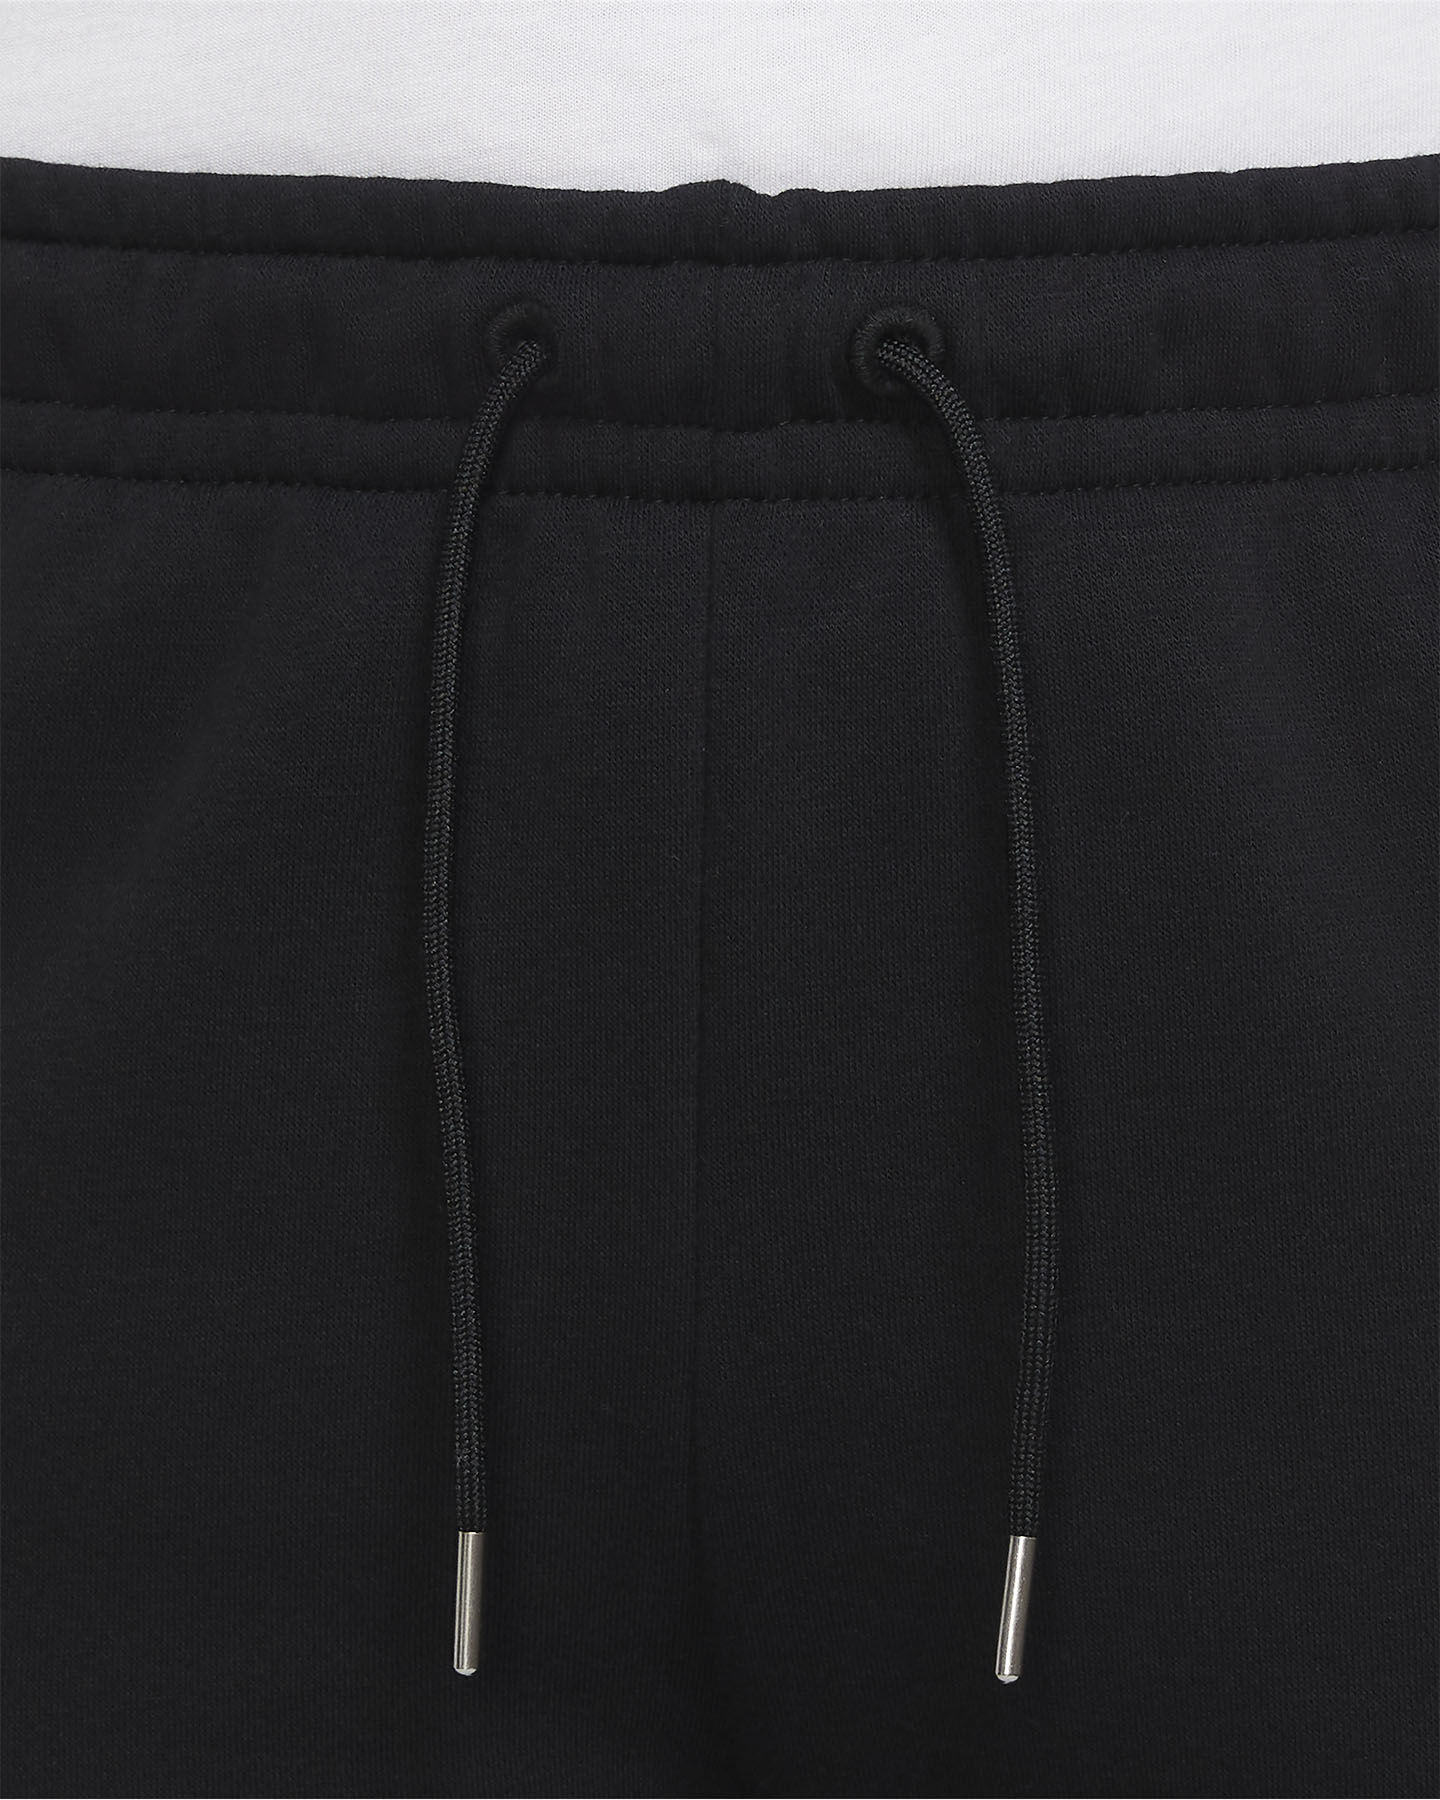  Pantalone NIKE ICON CLASH W S5247393|010|XS scatto 3